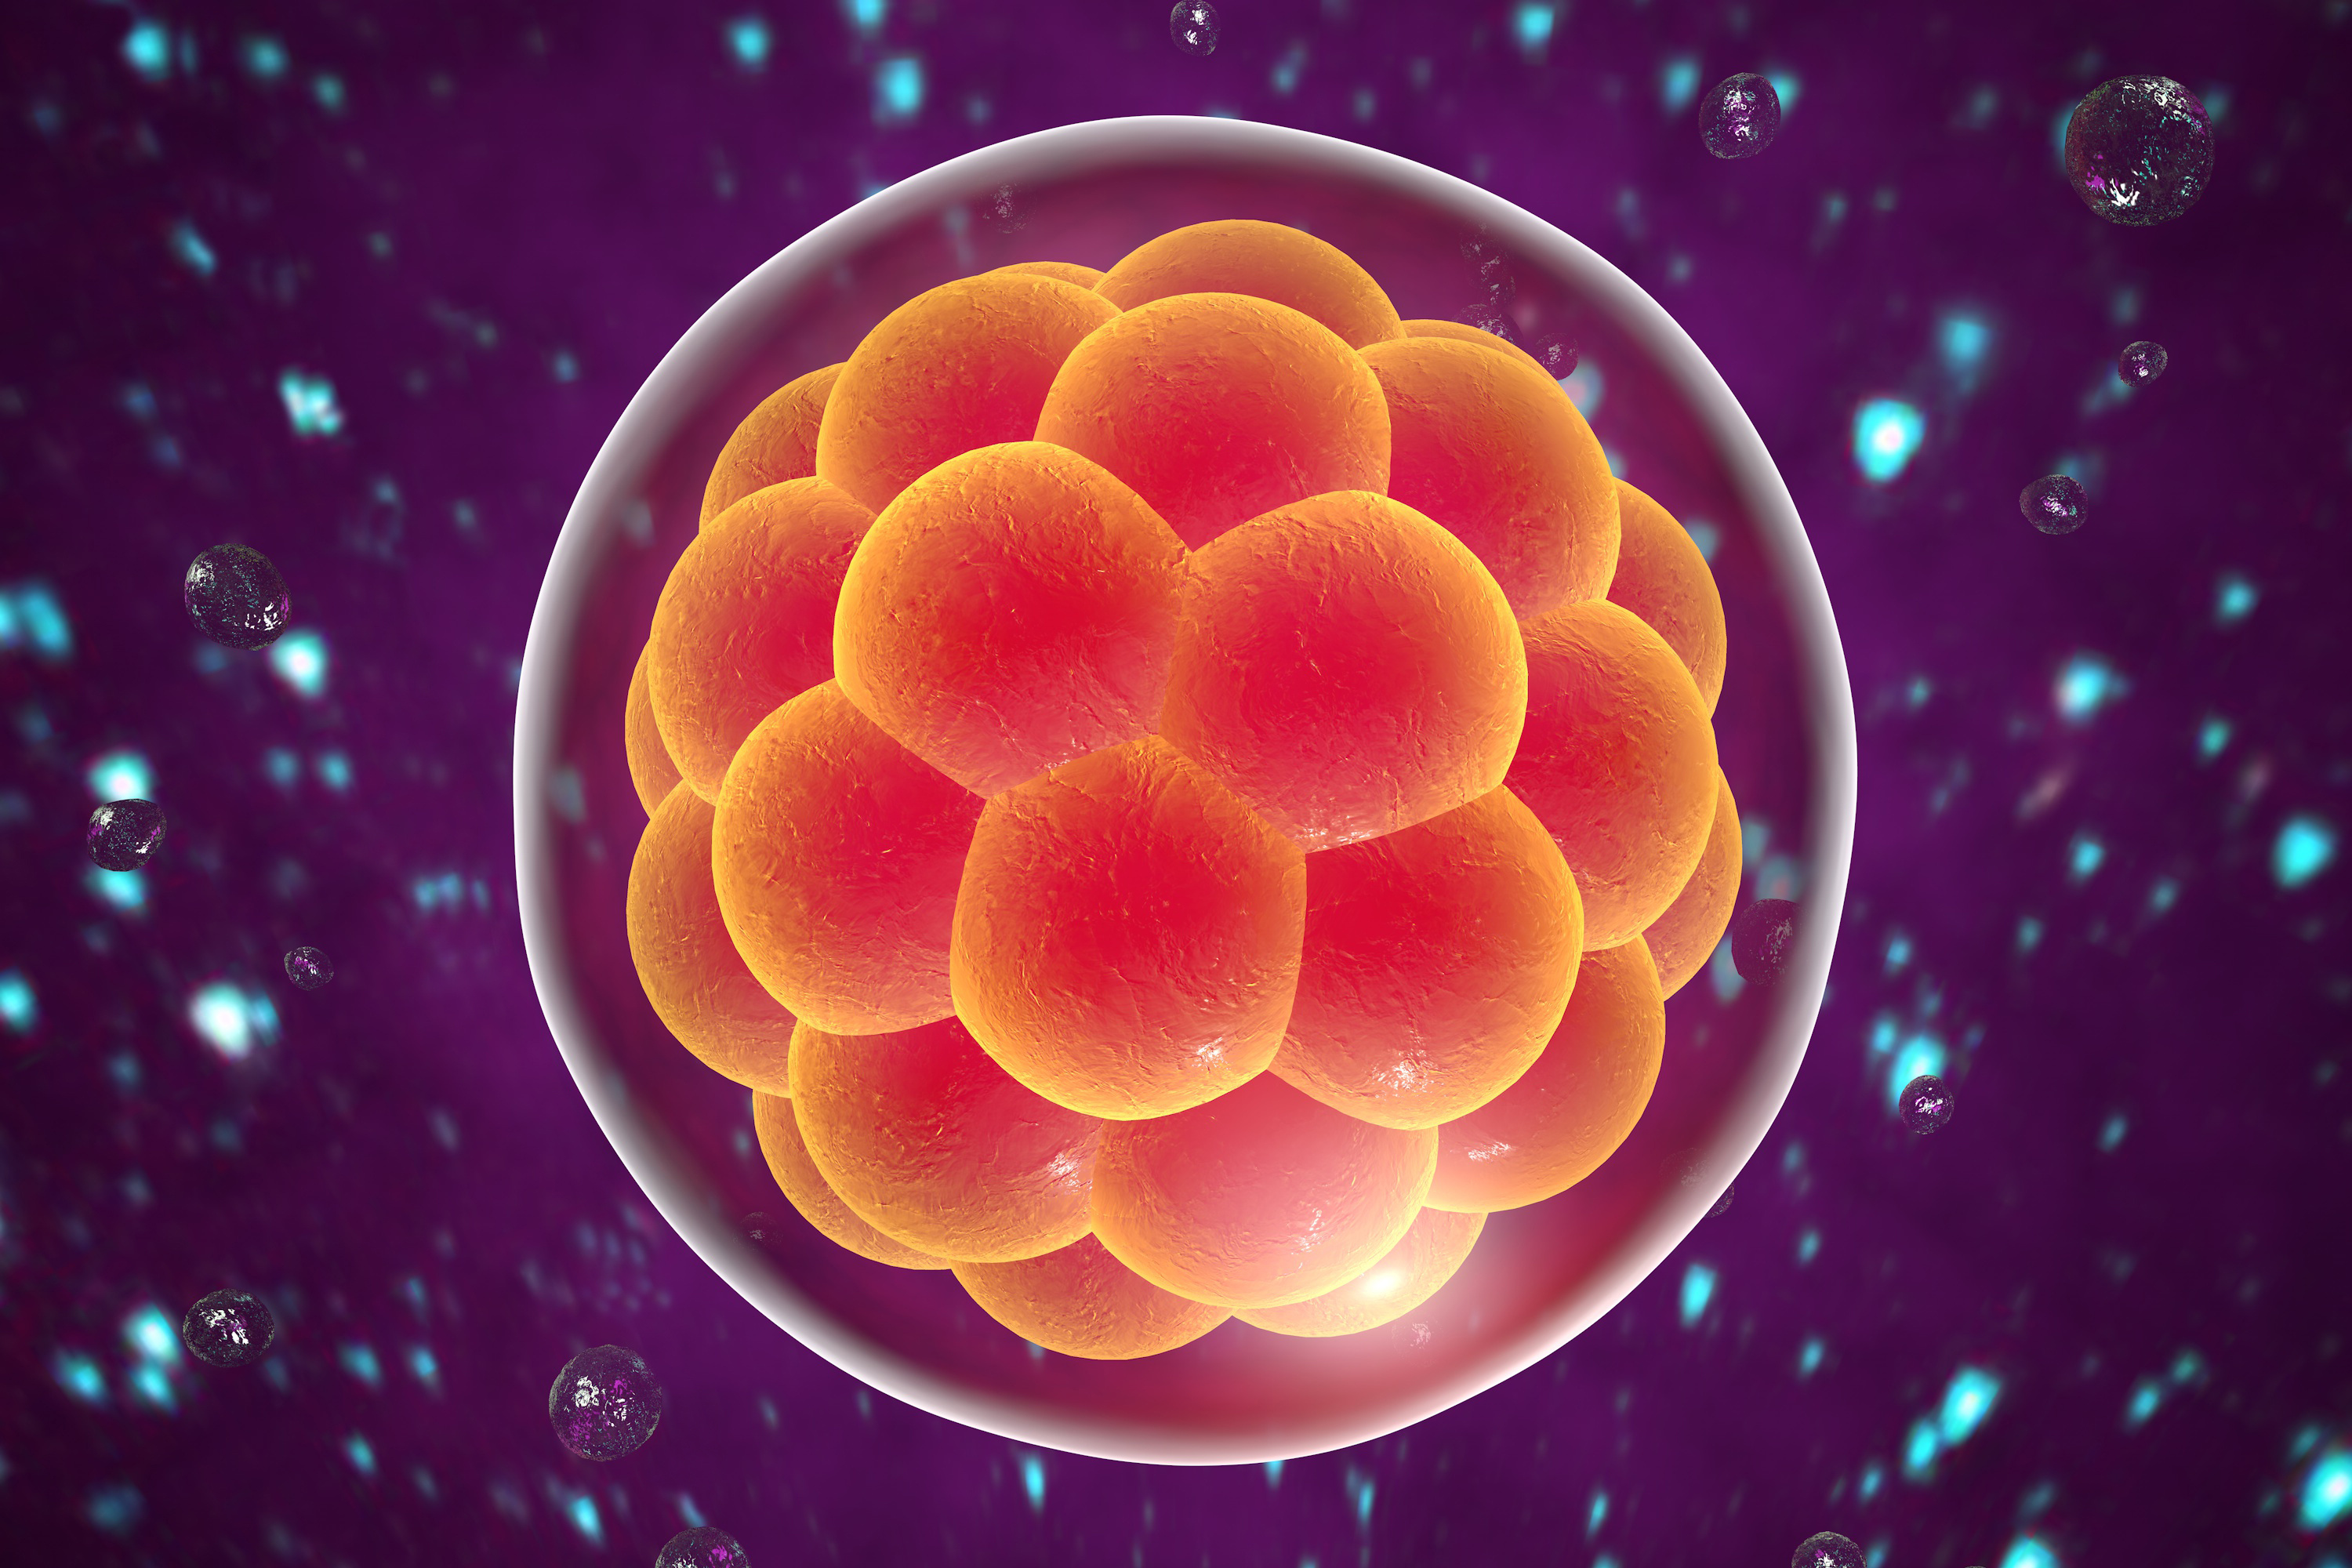 À partir de cellules souches embryonnaires de singe, des chercheurs ont réussi à créer des structures semblables à celles d'un embryon humain. © Kateryna Kon, Adobe Stock